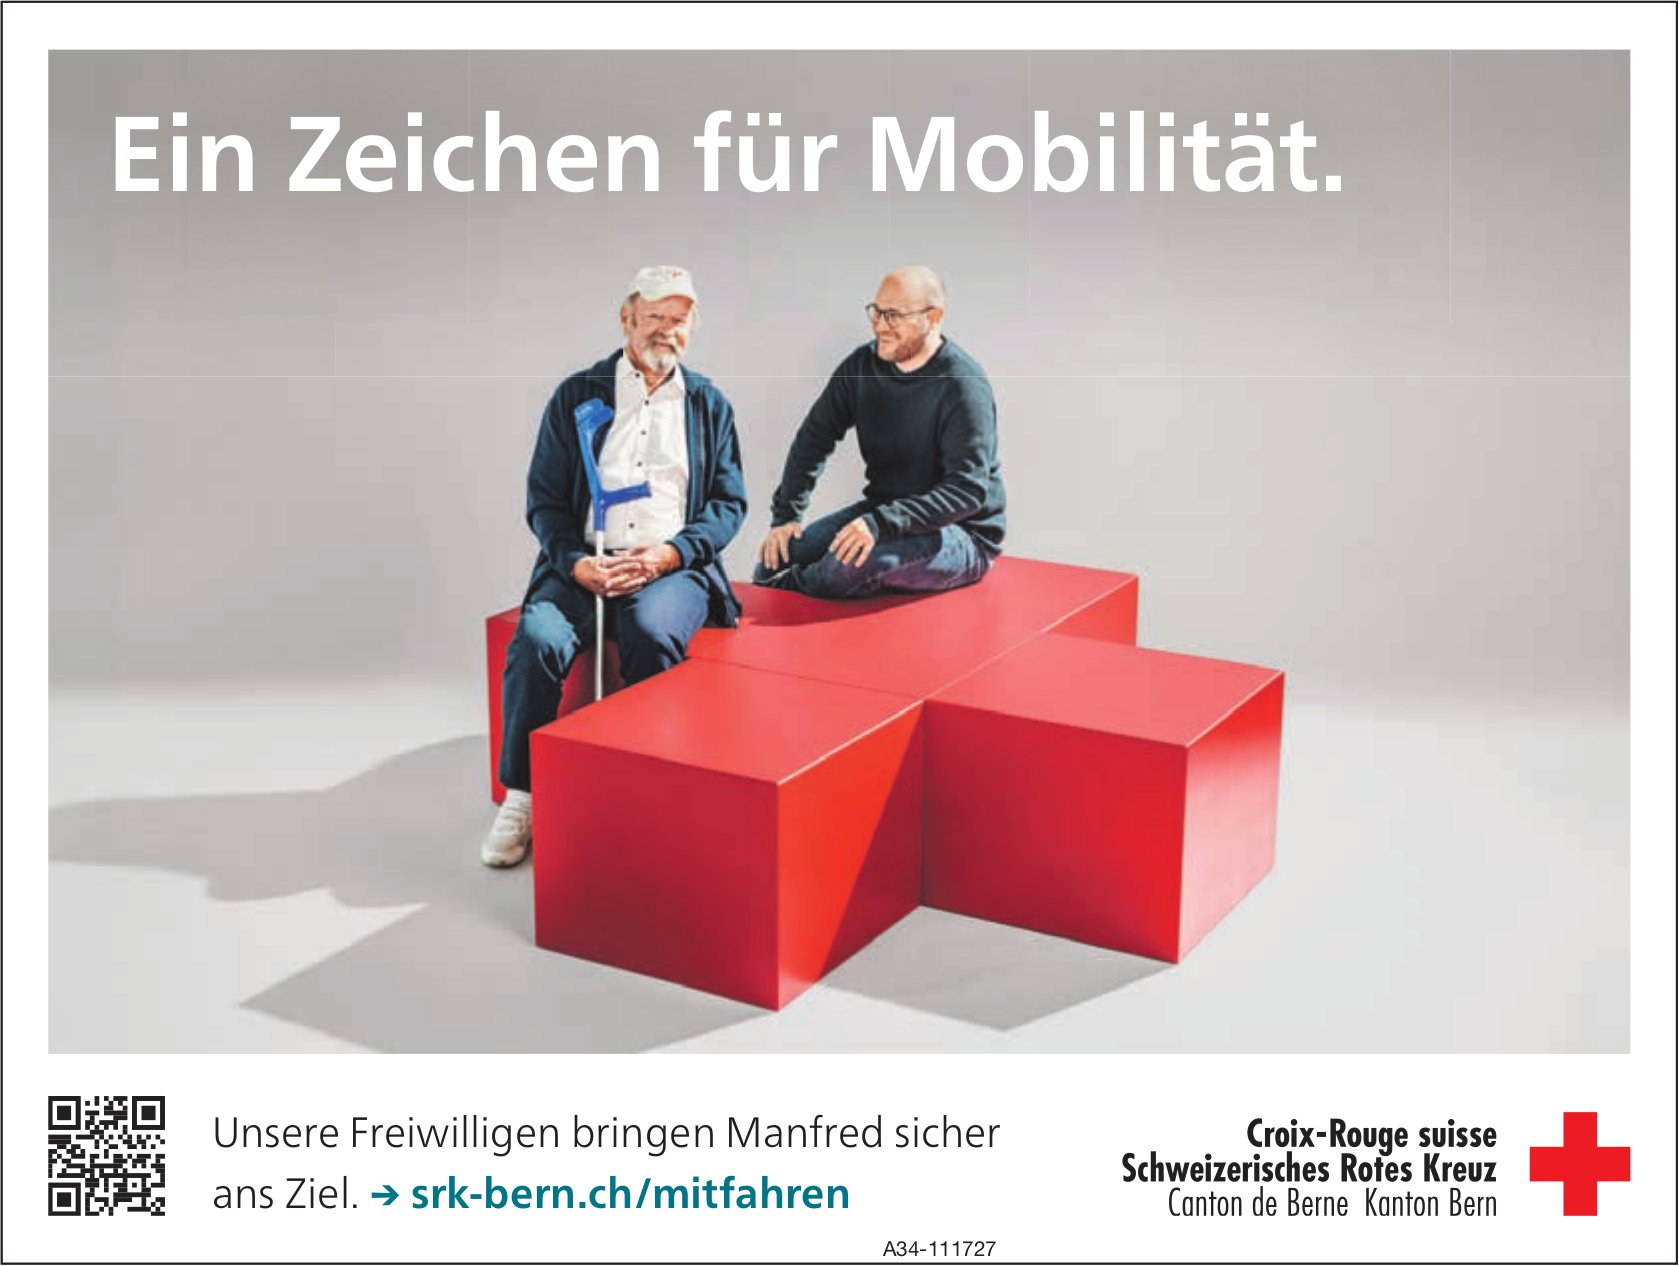 Schweizerisches Rotes Kreuz Kanton Bern - Ein Zeichen für Mobilität.